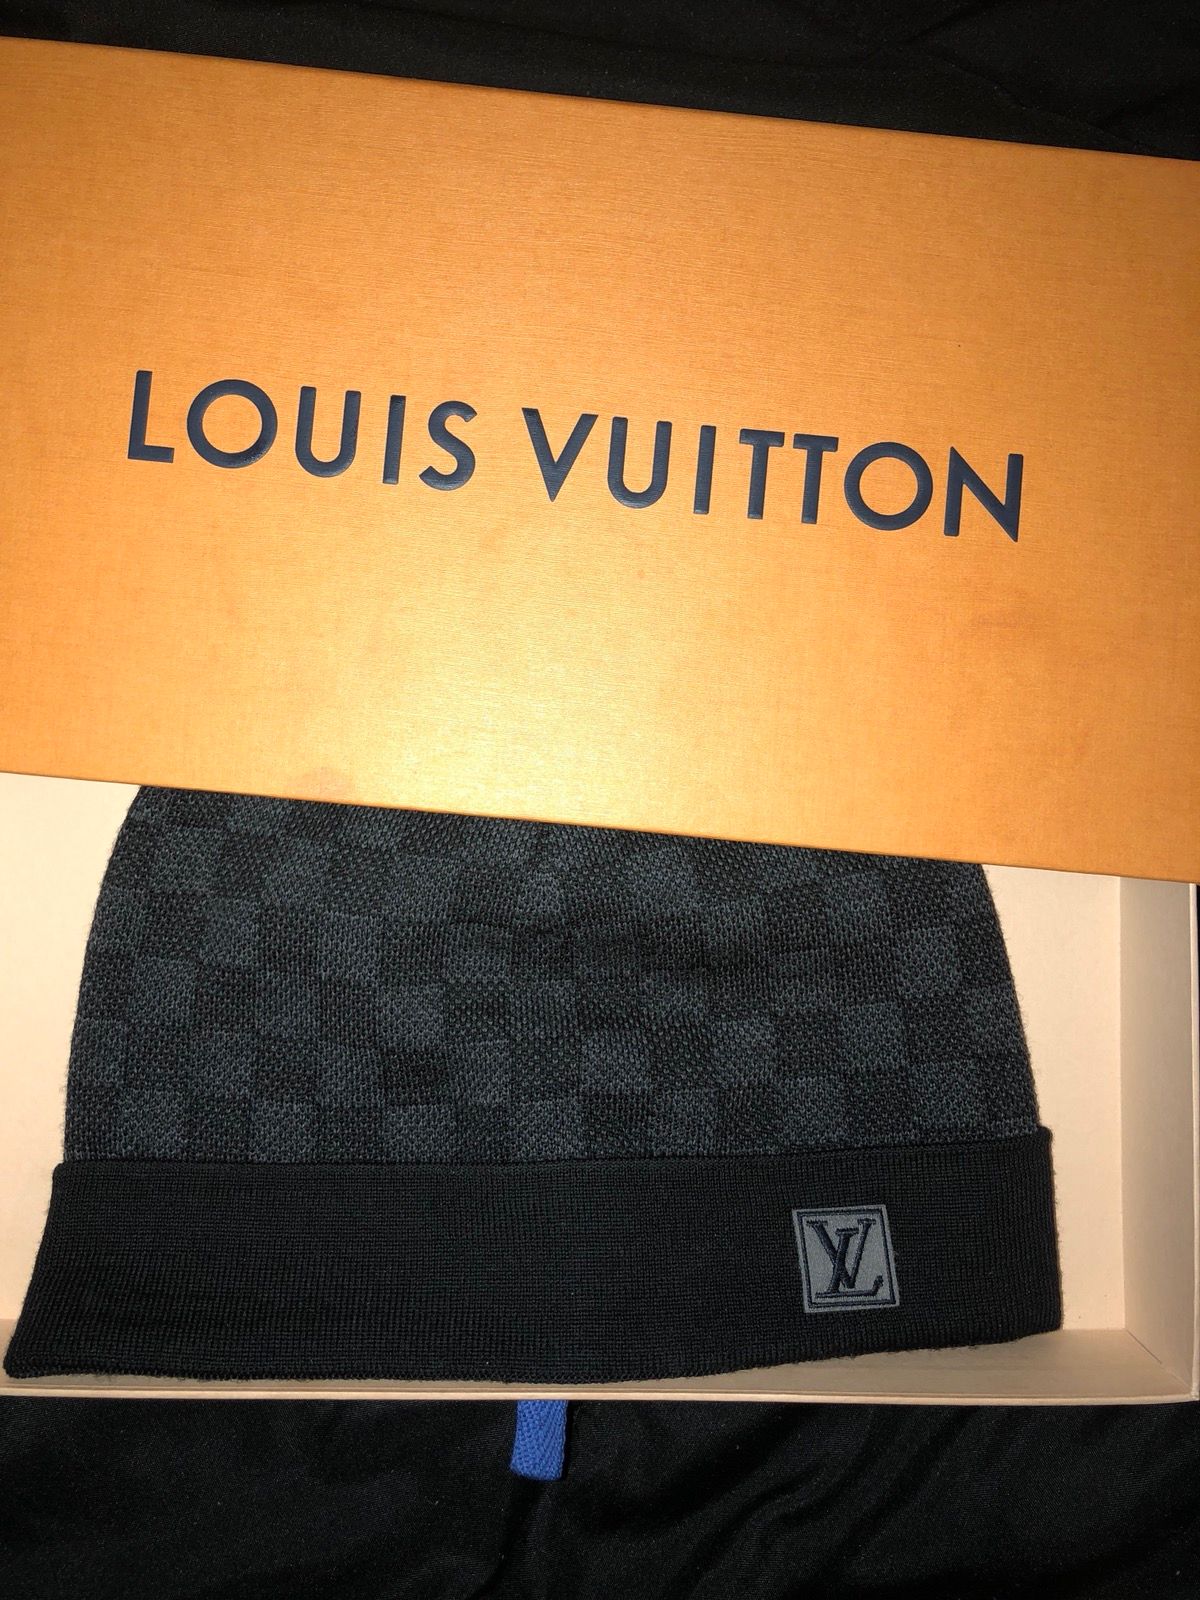 LV mössa, Louis Vuitton petite damier hat